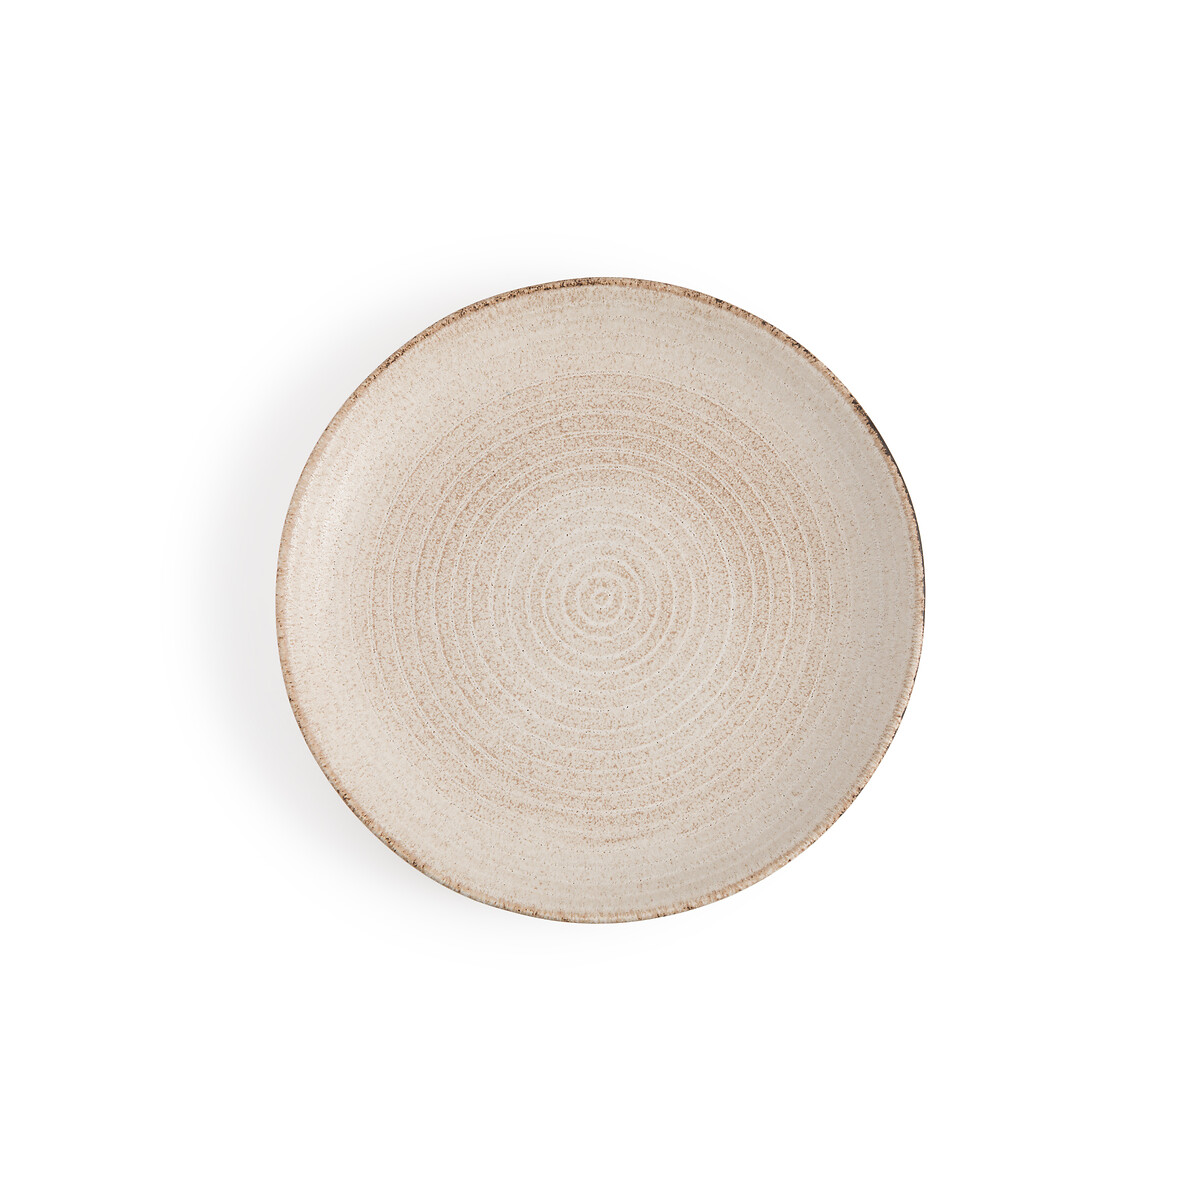 Комплект из четырех тарелок плоских Alvena единый размер бежевый комплект из четырех тарелок плоских alvena единый размер бежевый